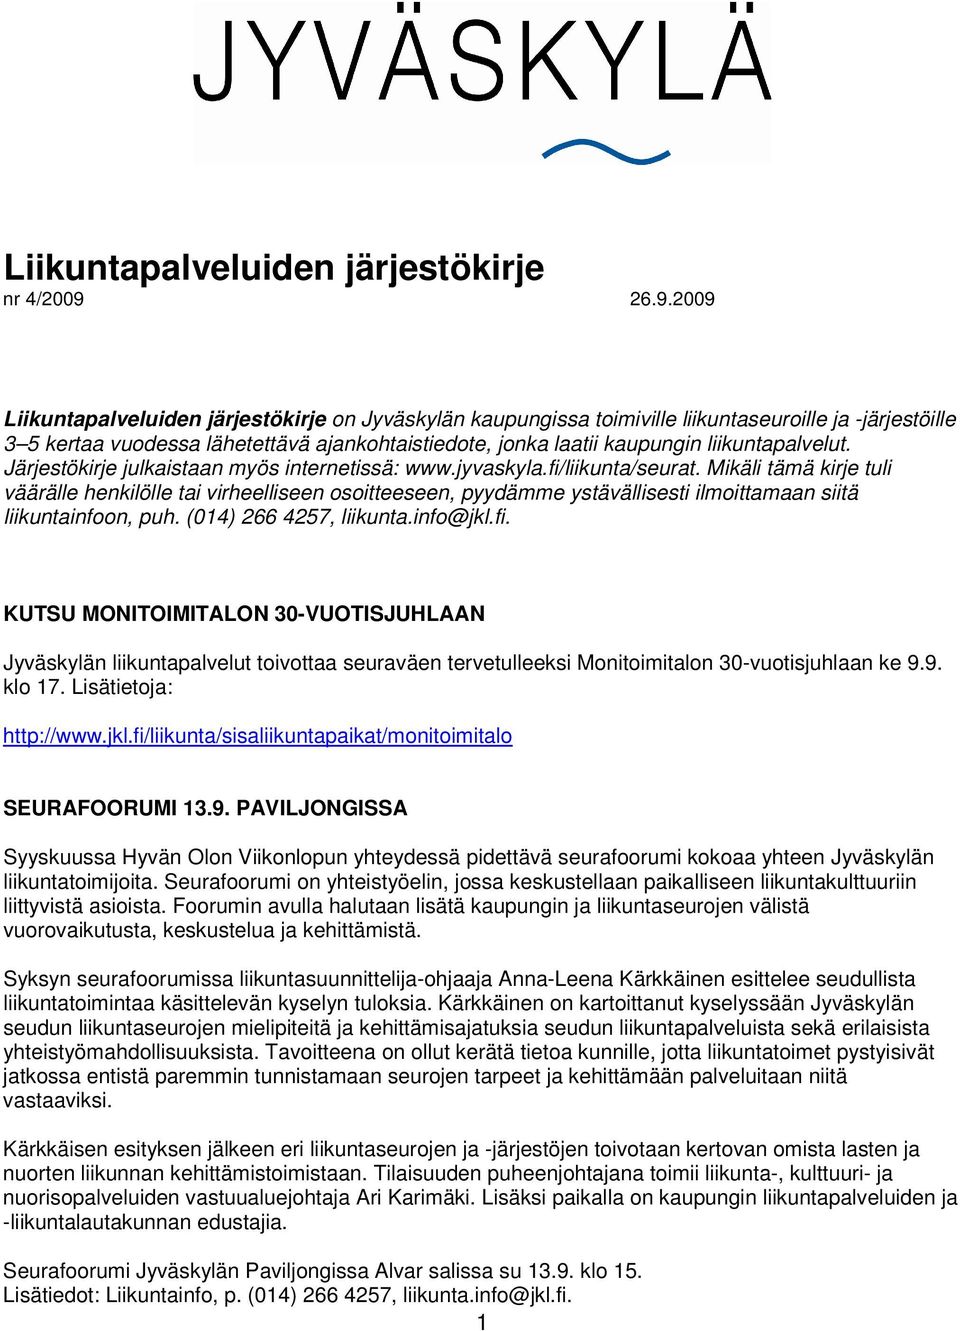 liikuntapalvelut. Järjestökirje julkaistaan myös internetissä: www.jyvaskyla.fi/liikunta/seurat.